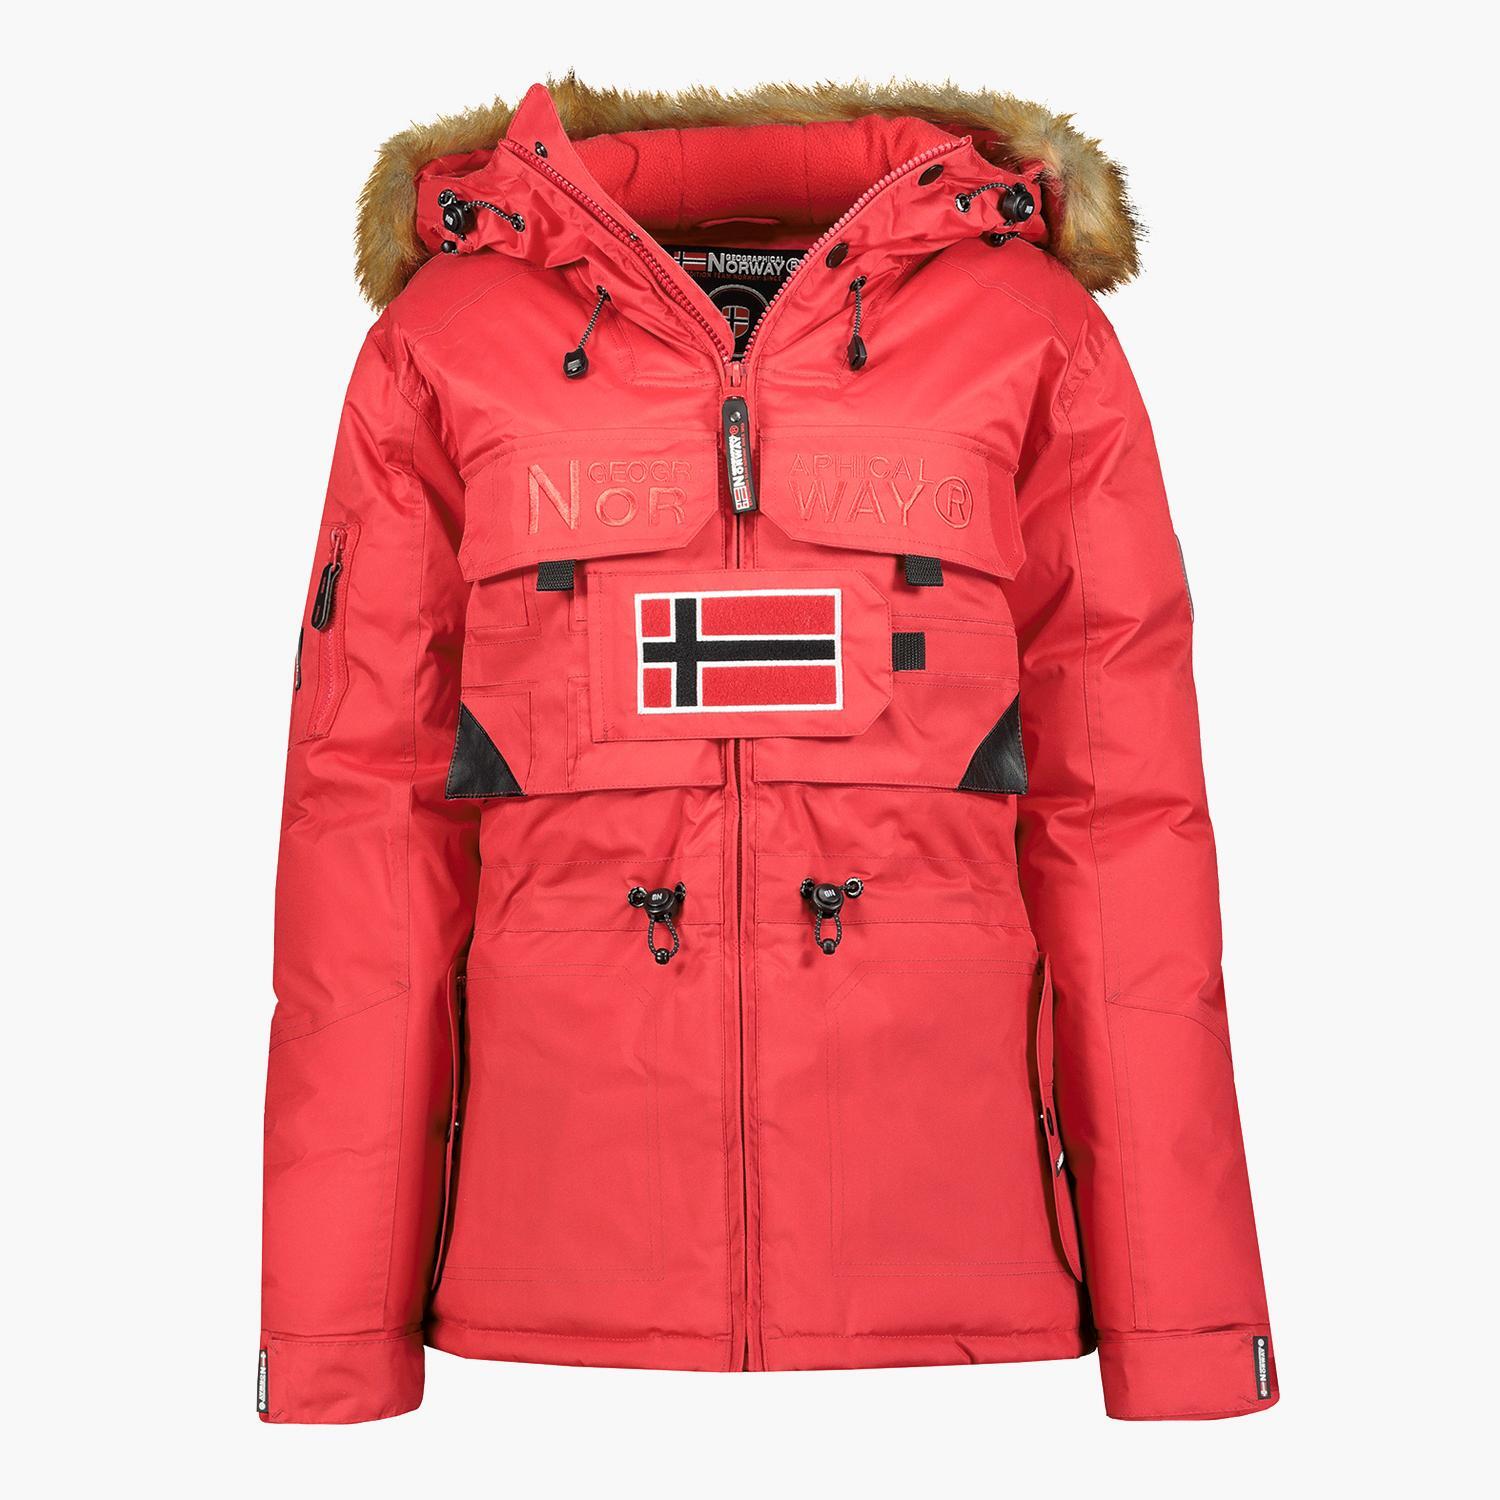 La chaqueta de Geographical Norway sin cremallera en medio que te